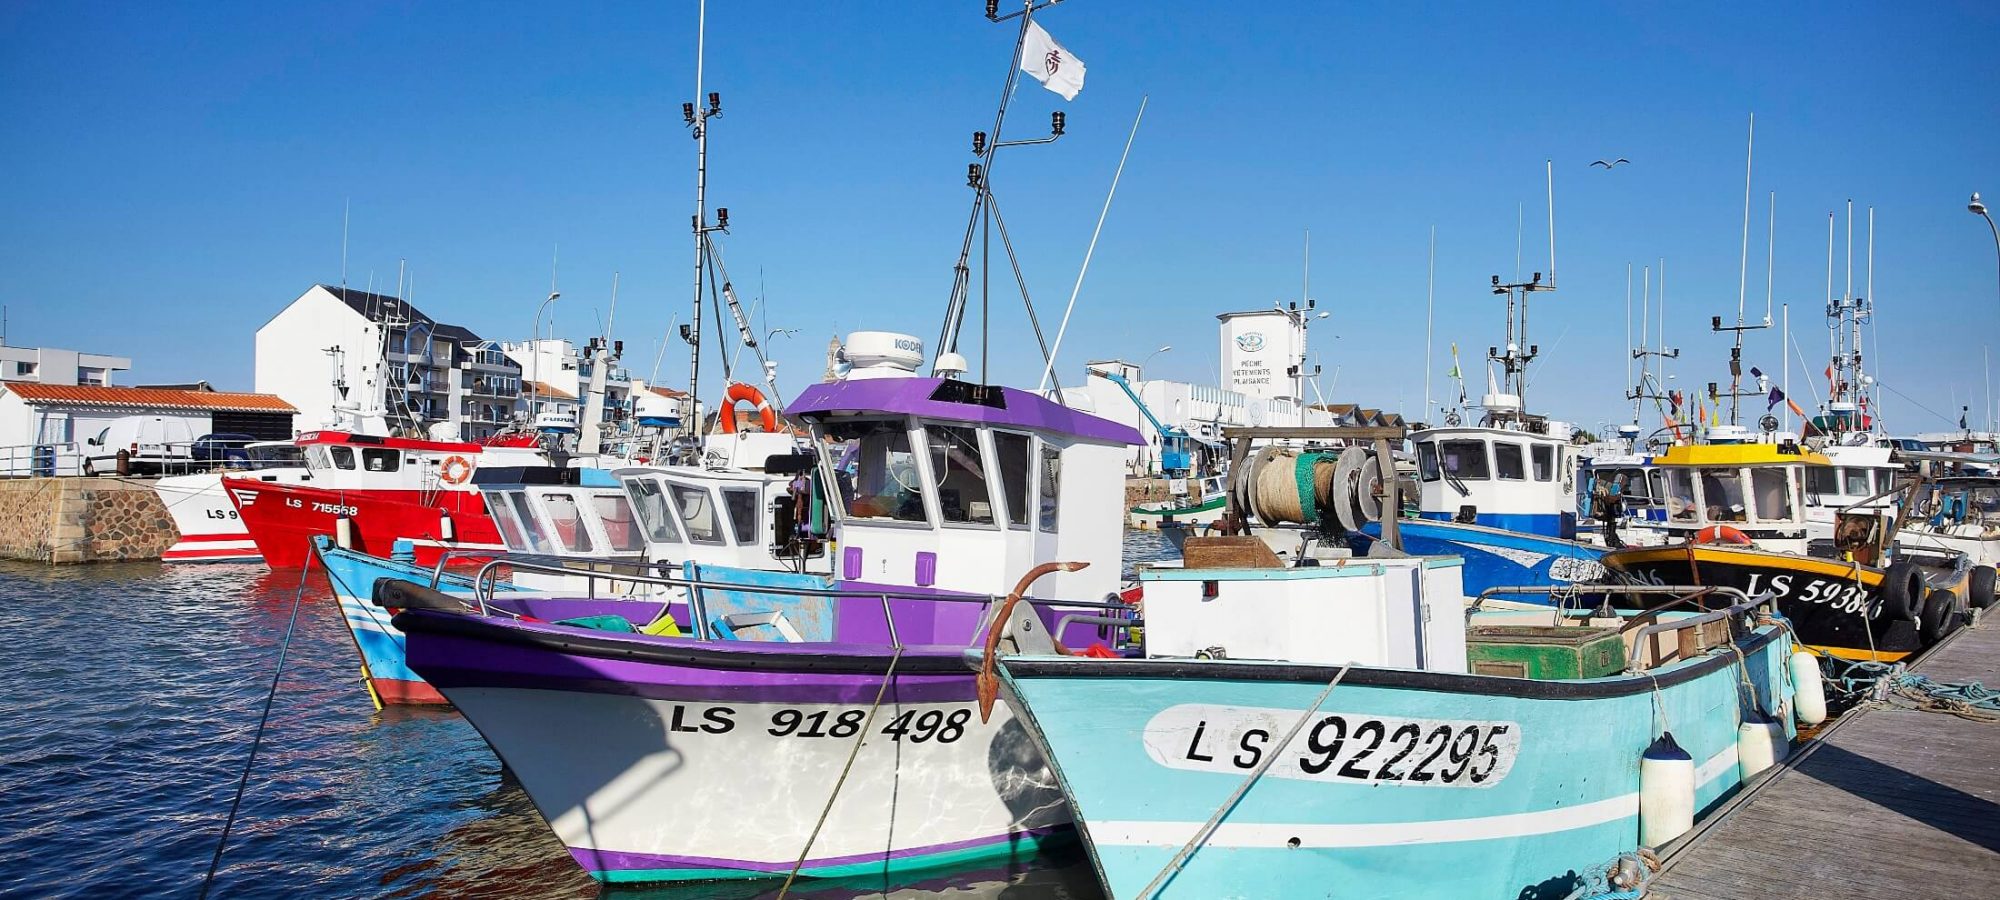 Embarquez pour une journée de pêche en mer ! - Office de Tourisme du Pays  de Saint Gilles Croix de vie